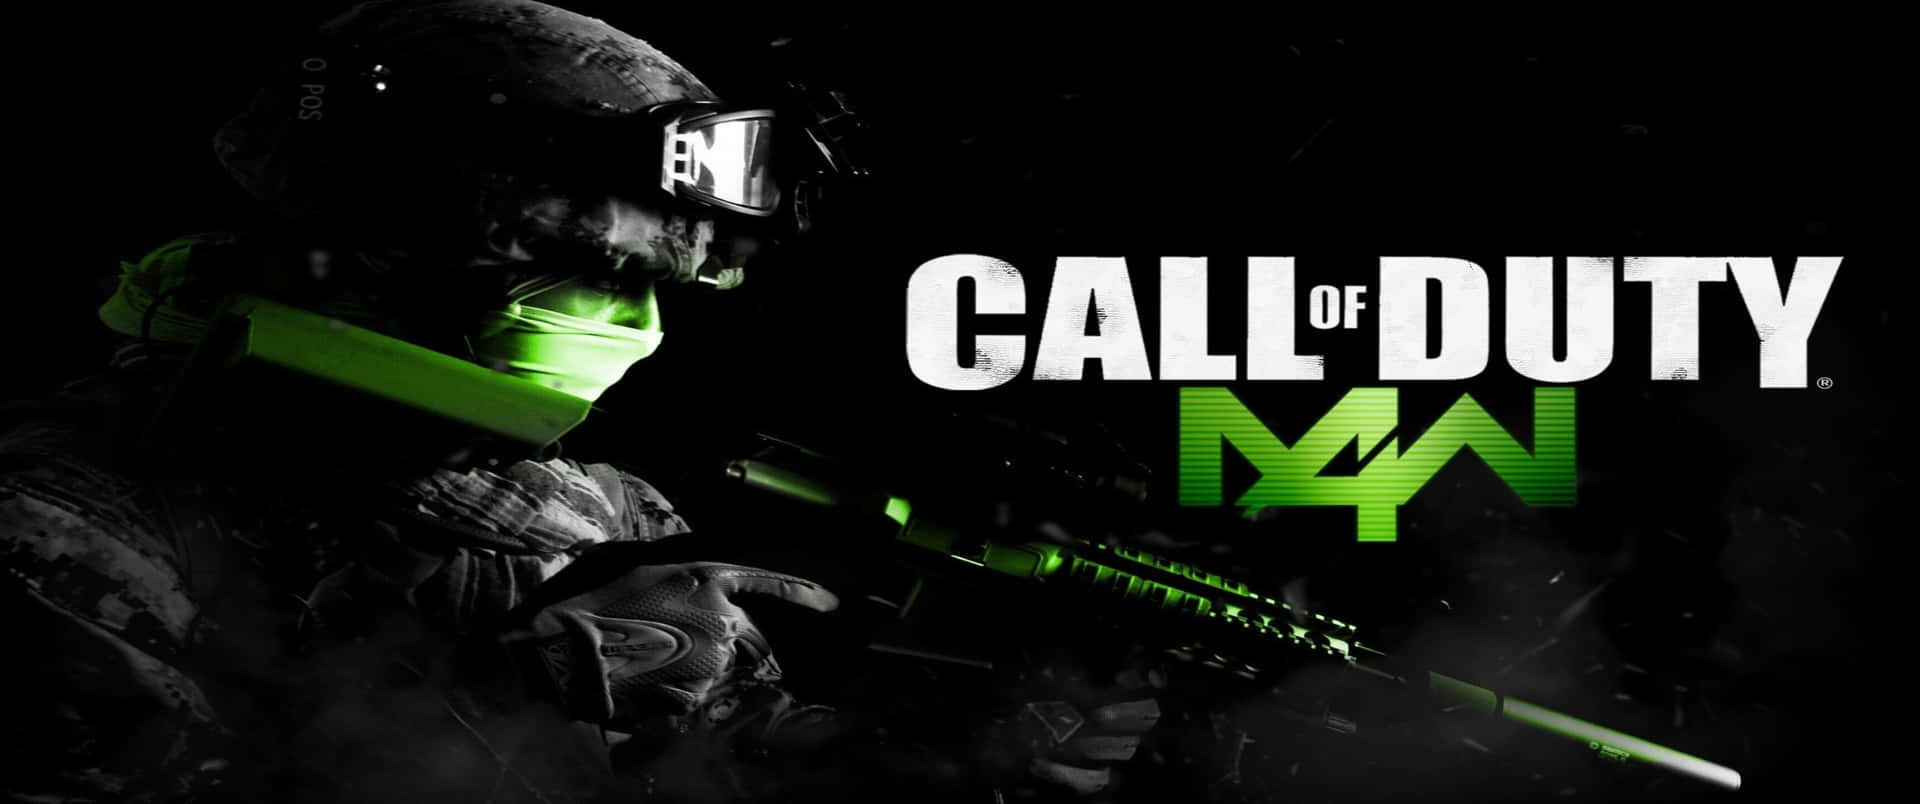 Titoloverde Neon 3440x1440p Sfondo Di Call Of Duty Modern Warfare.